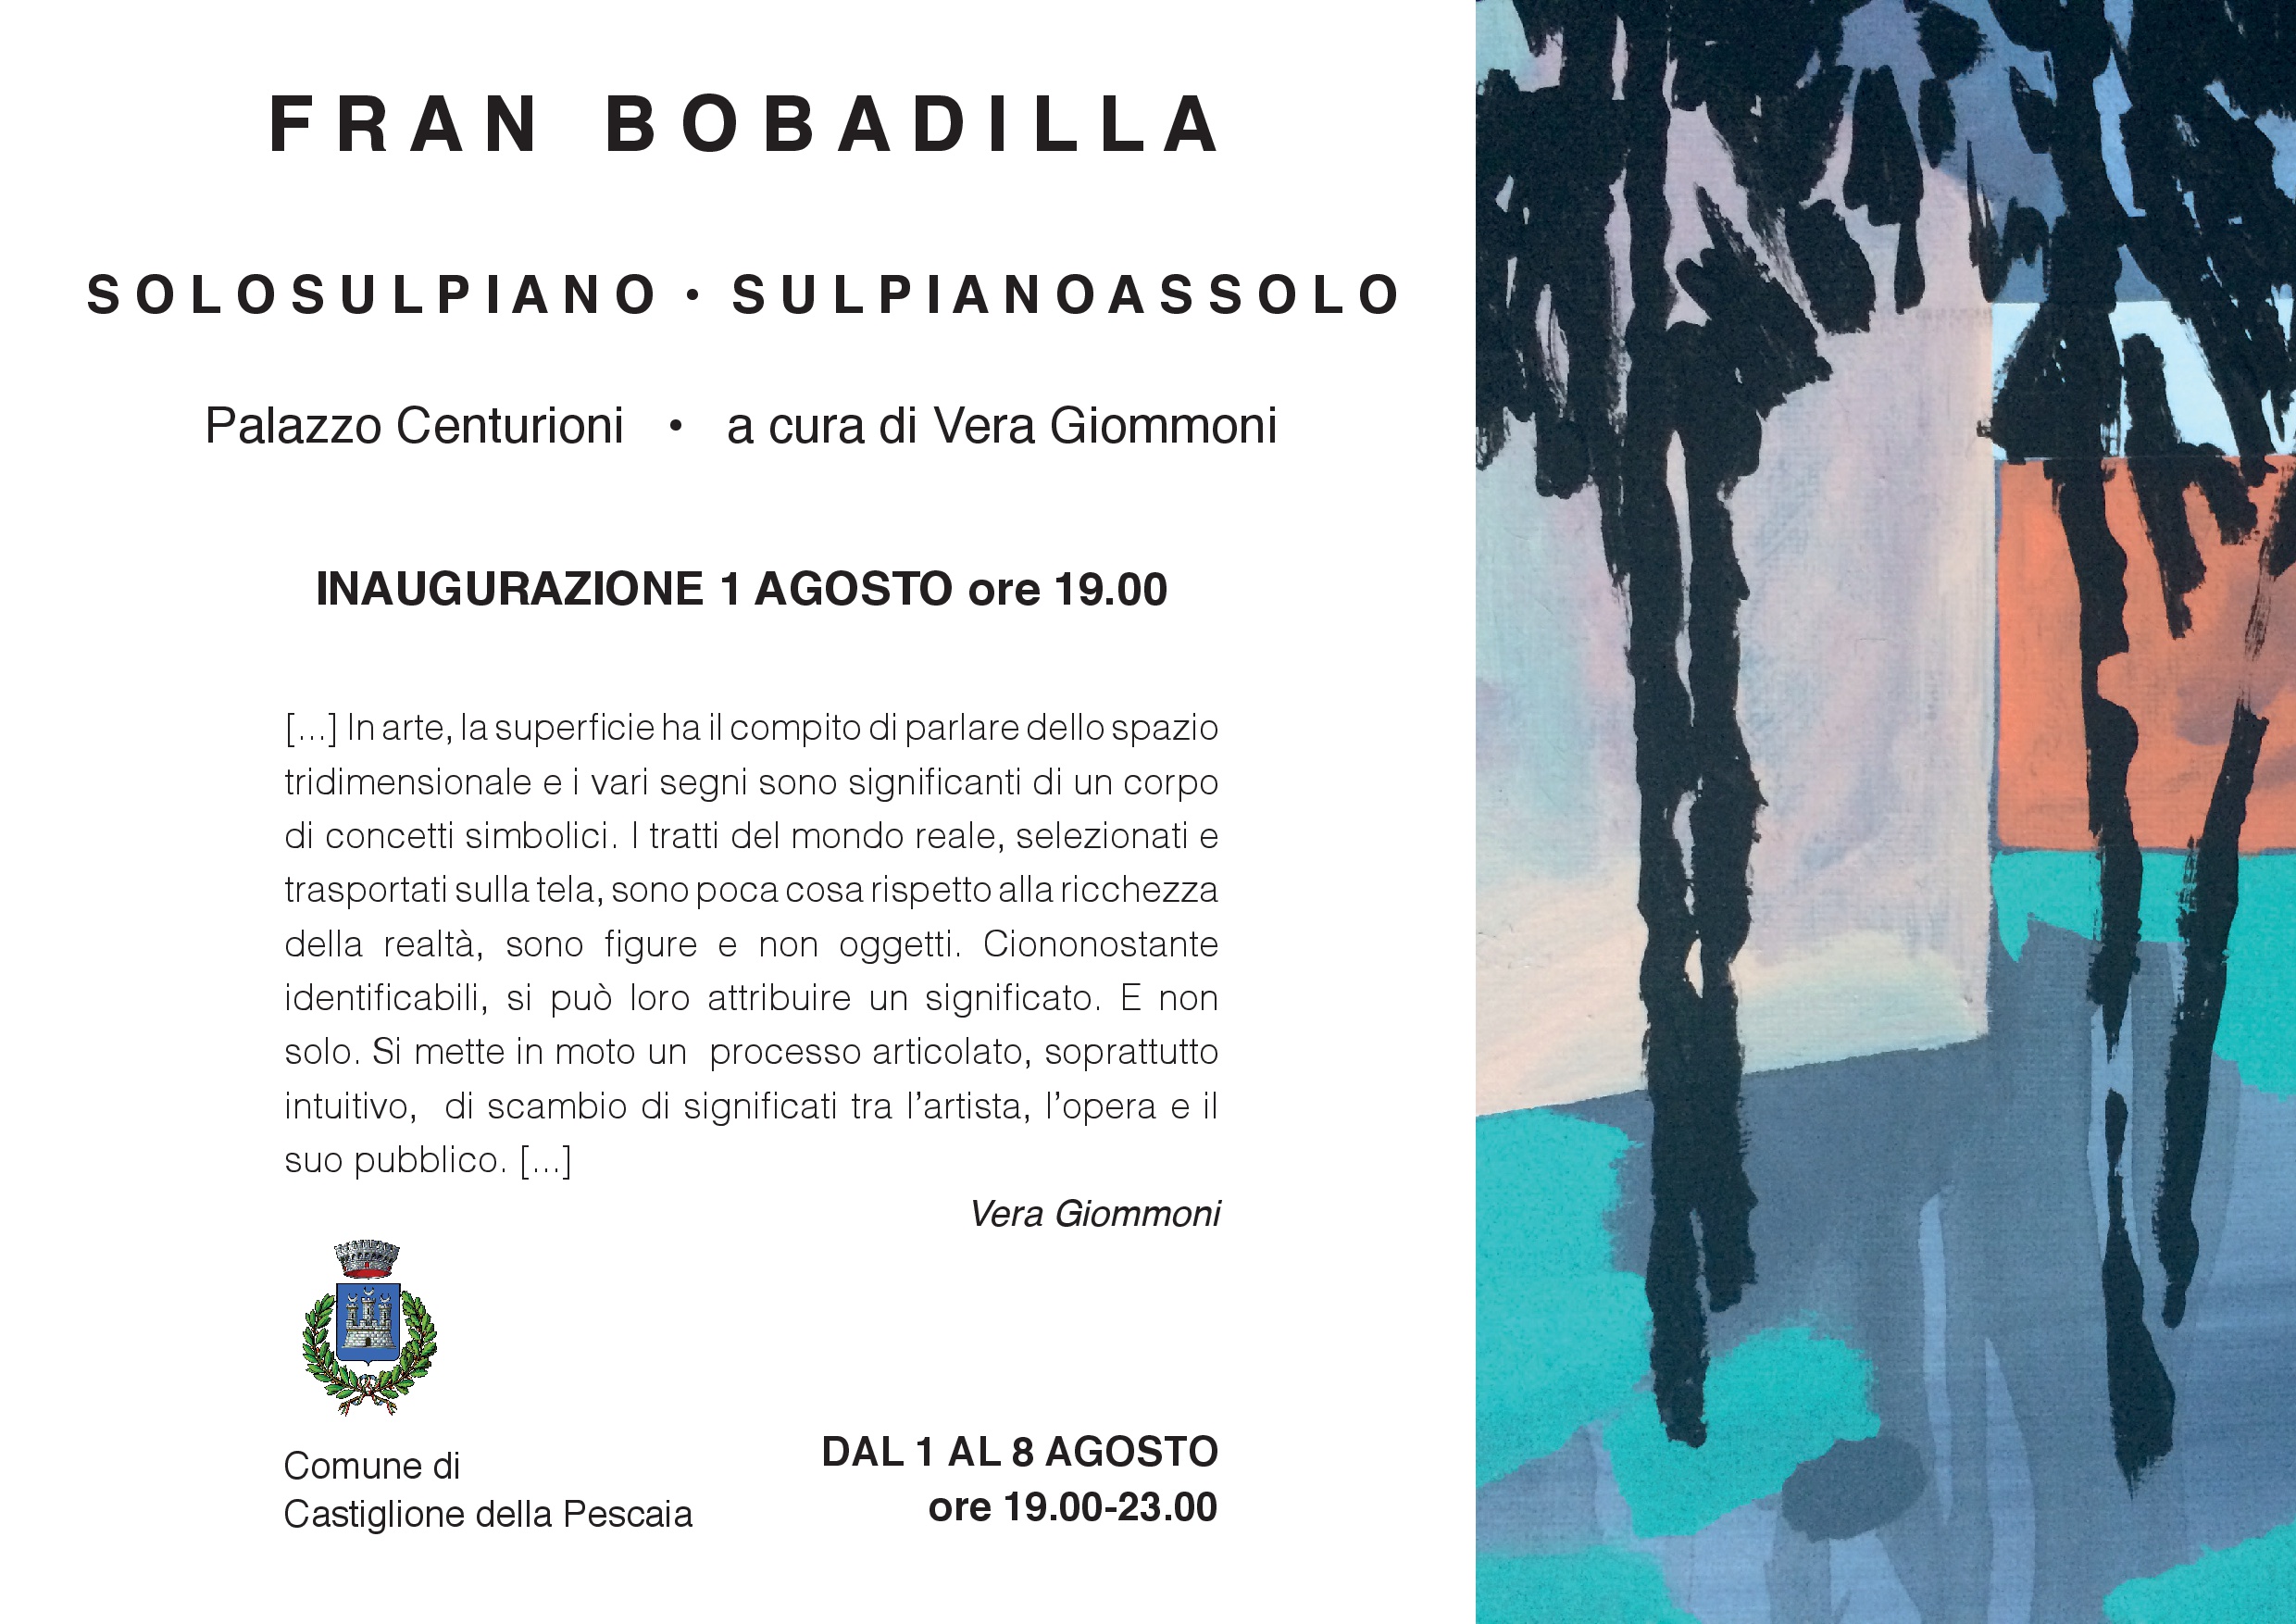 Fran Bobadilla – solosulpiano sulpianoassolo